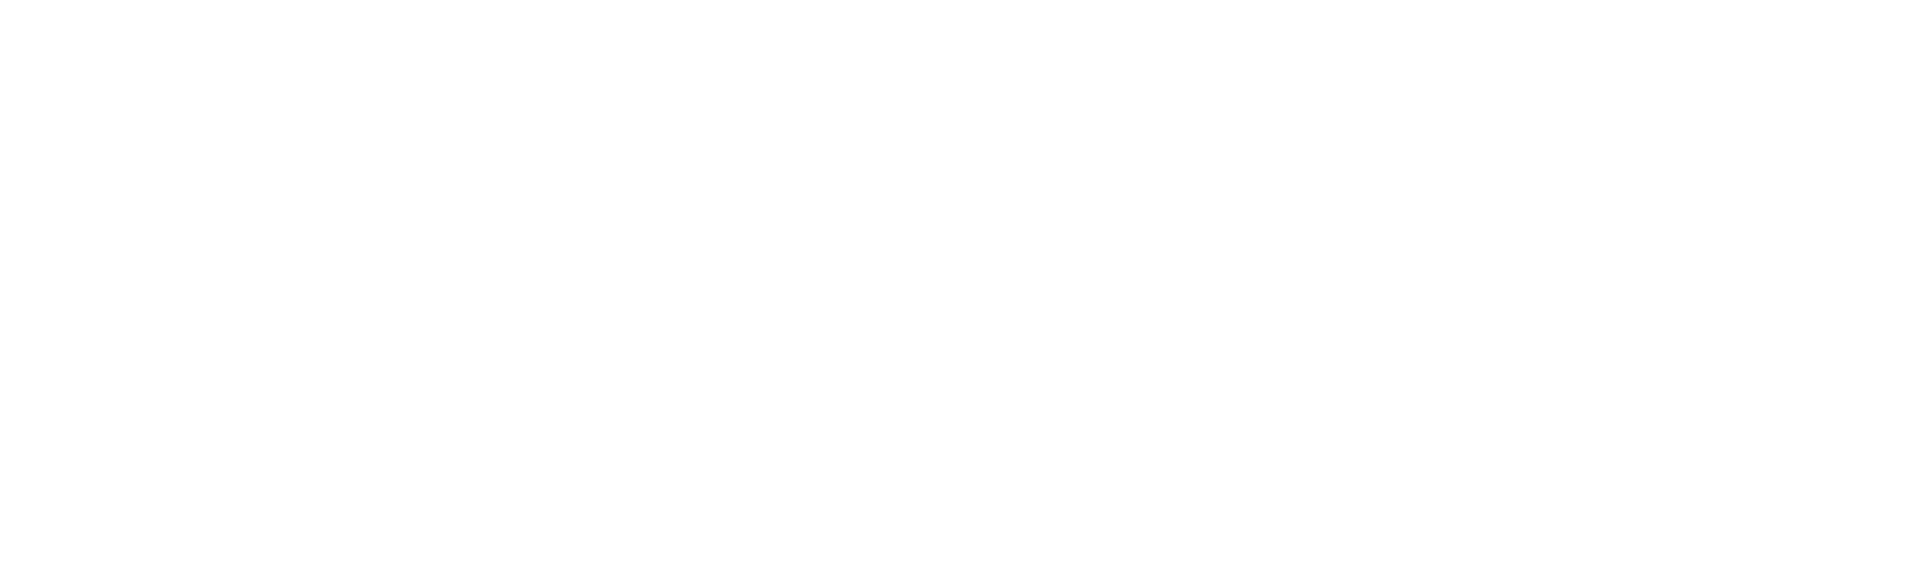 AWS-White-Logo-Resized